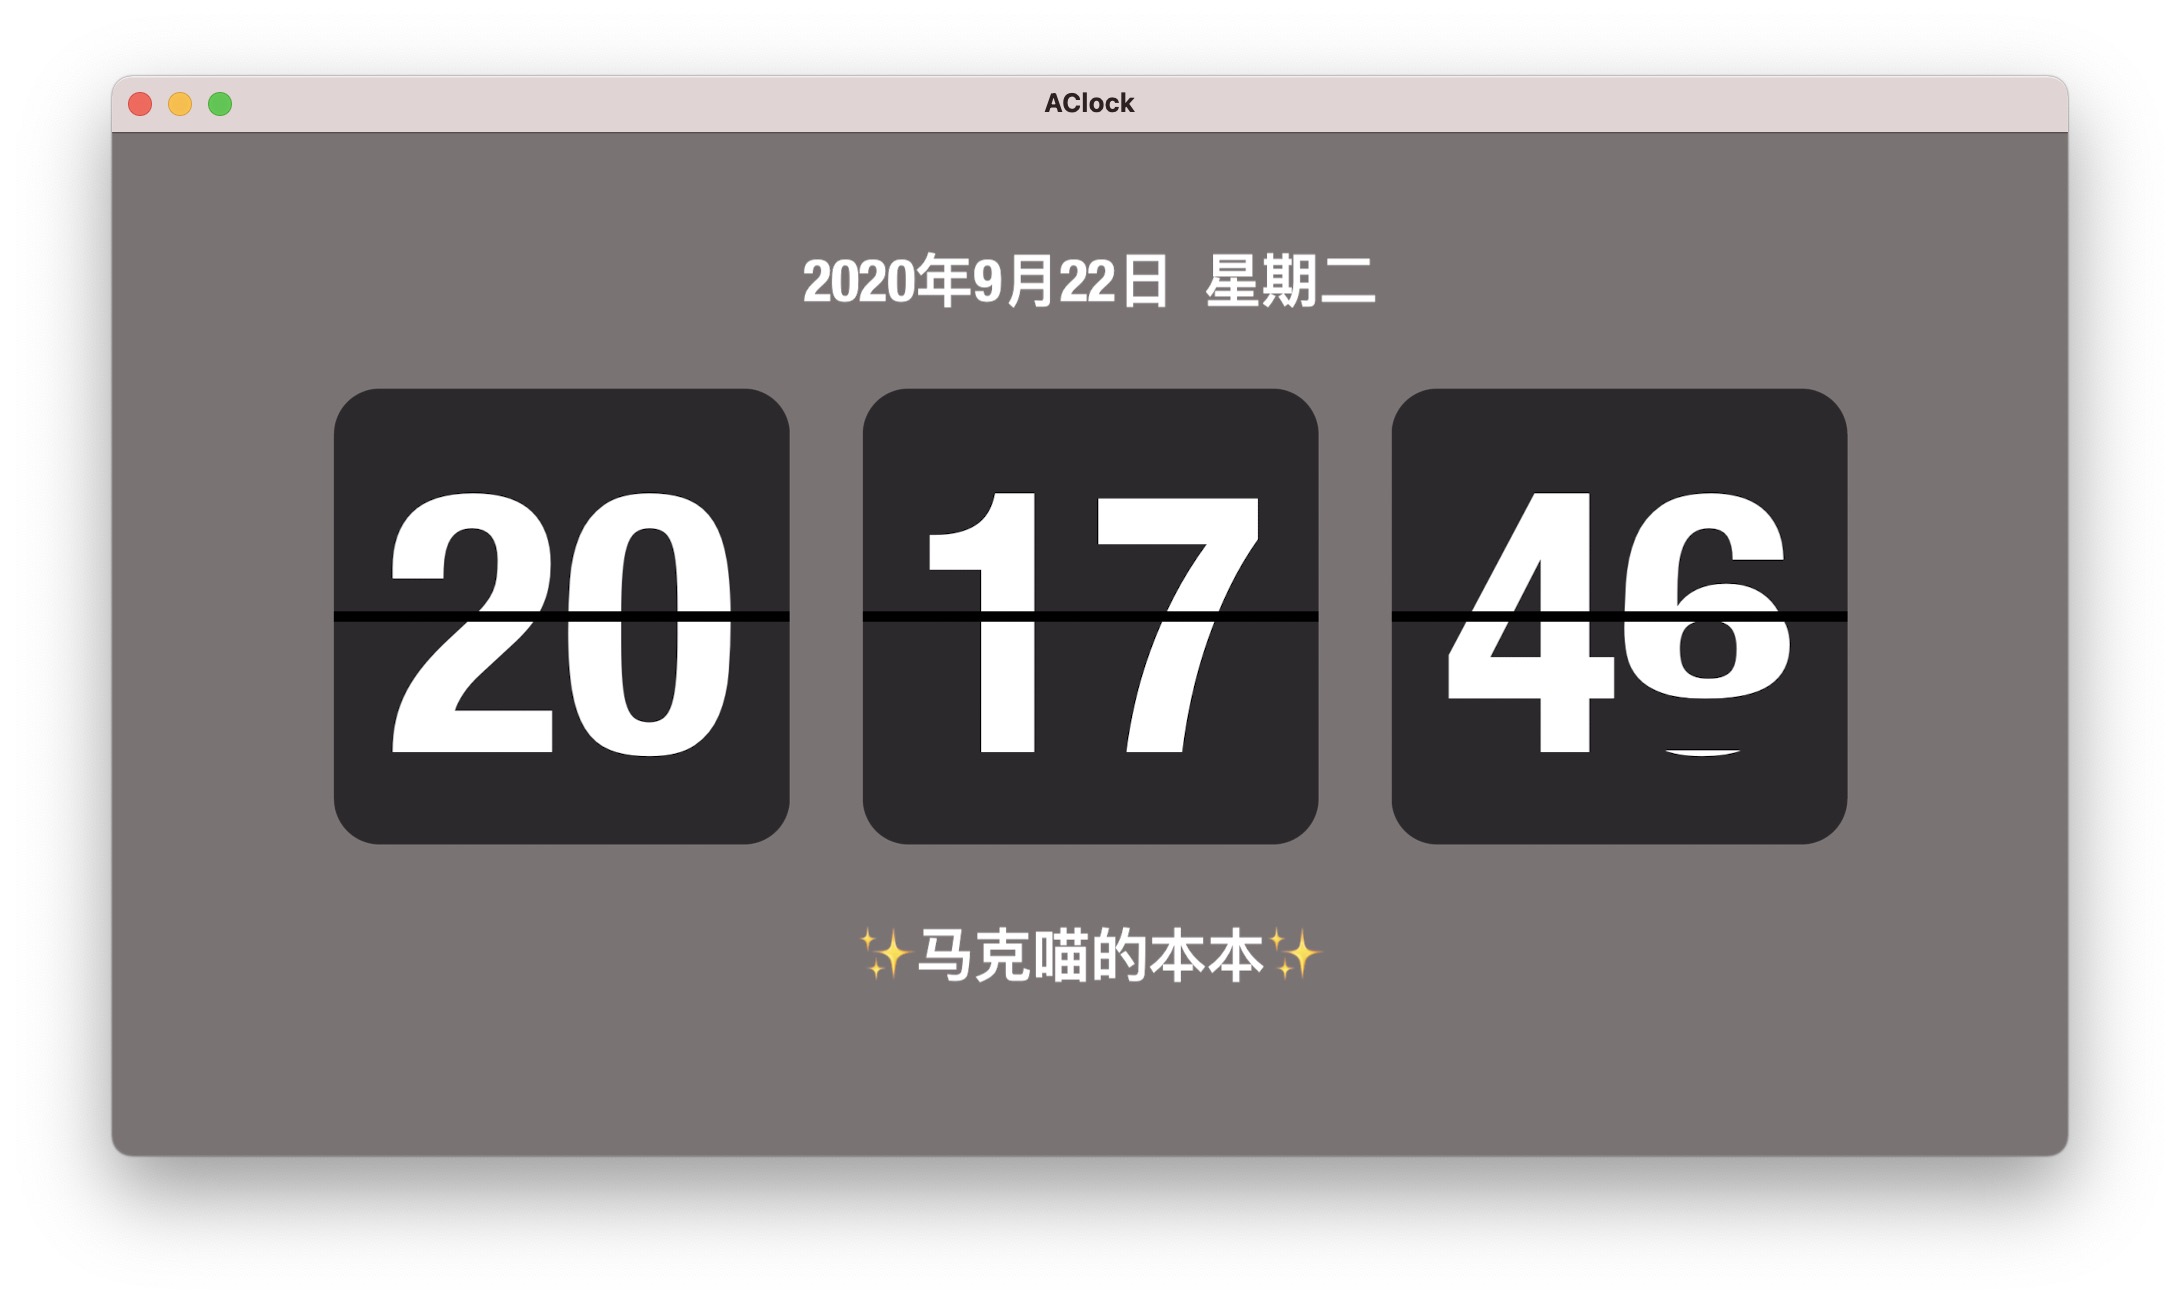 AClock 2.3中文版 翻页时钟屏保制作